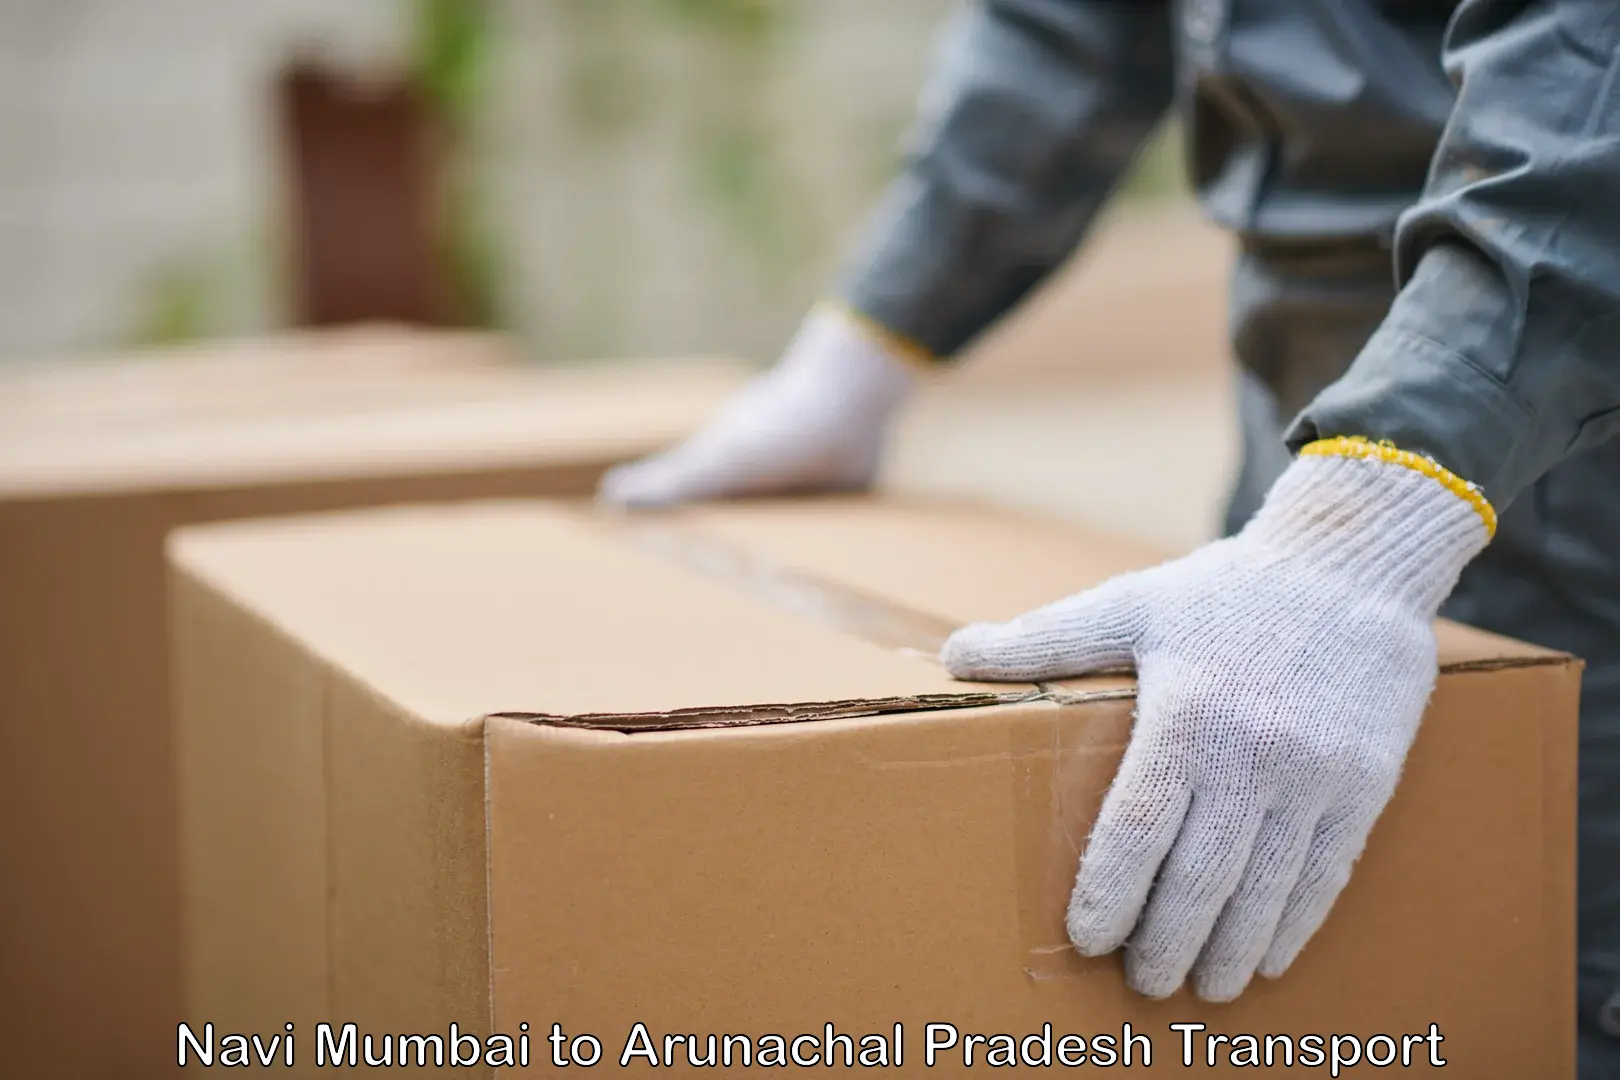 International cargo transportation services Navi Mumbai to Arunachal Pradesh